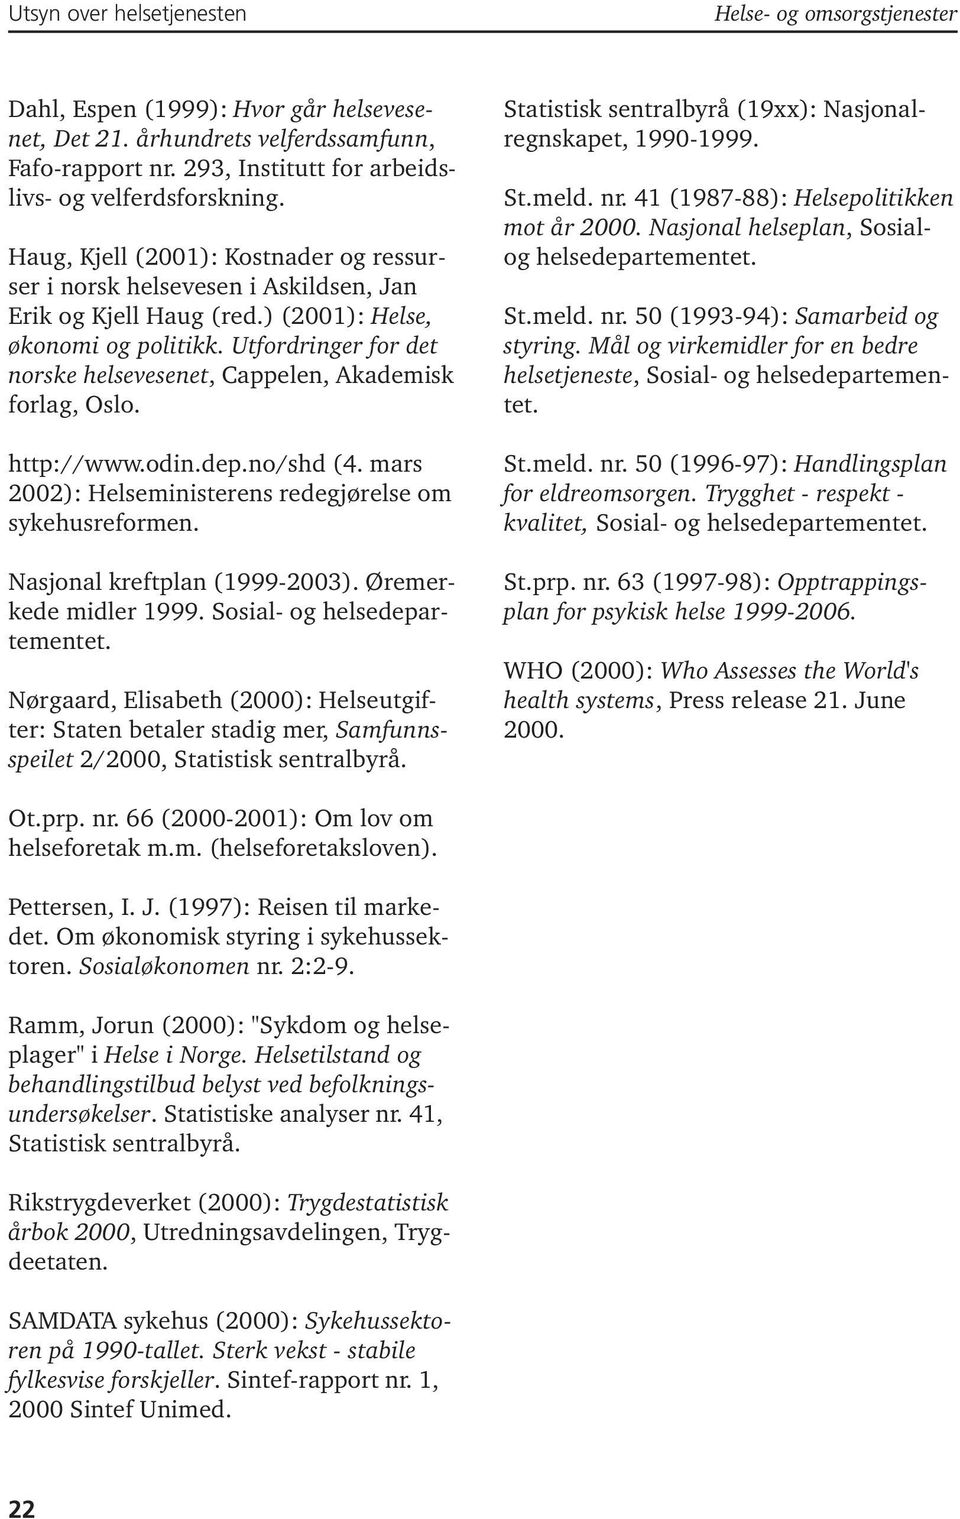 Utfordringer for det norske helsevesenet, Cappelen, Akademisk forlag, Oslo. http://www.odin.dep.no/shd (4. mars 2002): Helseministerens redegjørelse om sykehusreformen. Nasjonal kreftplan (1999-2003).